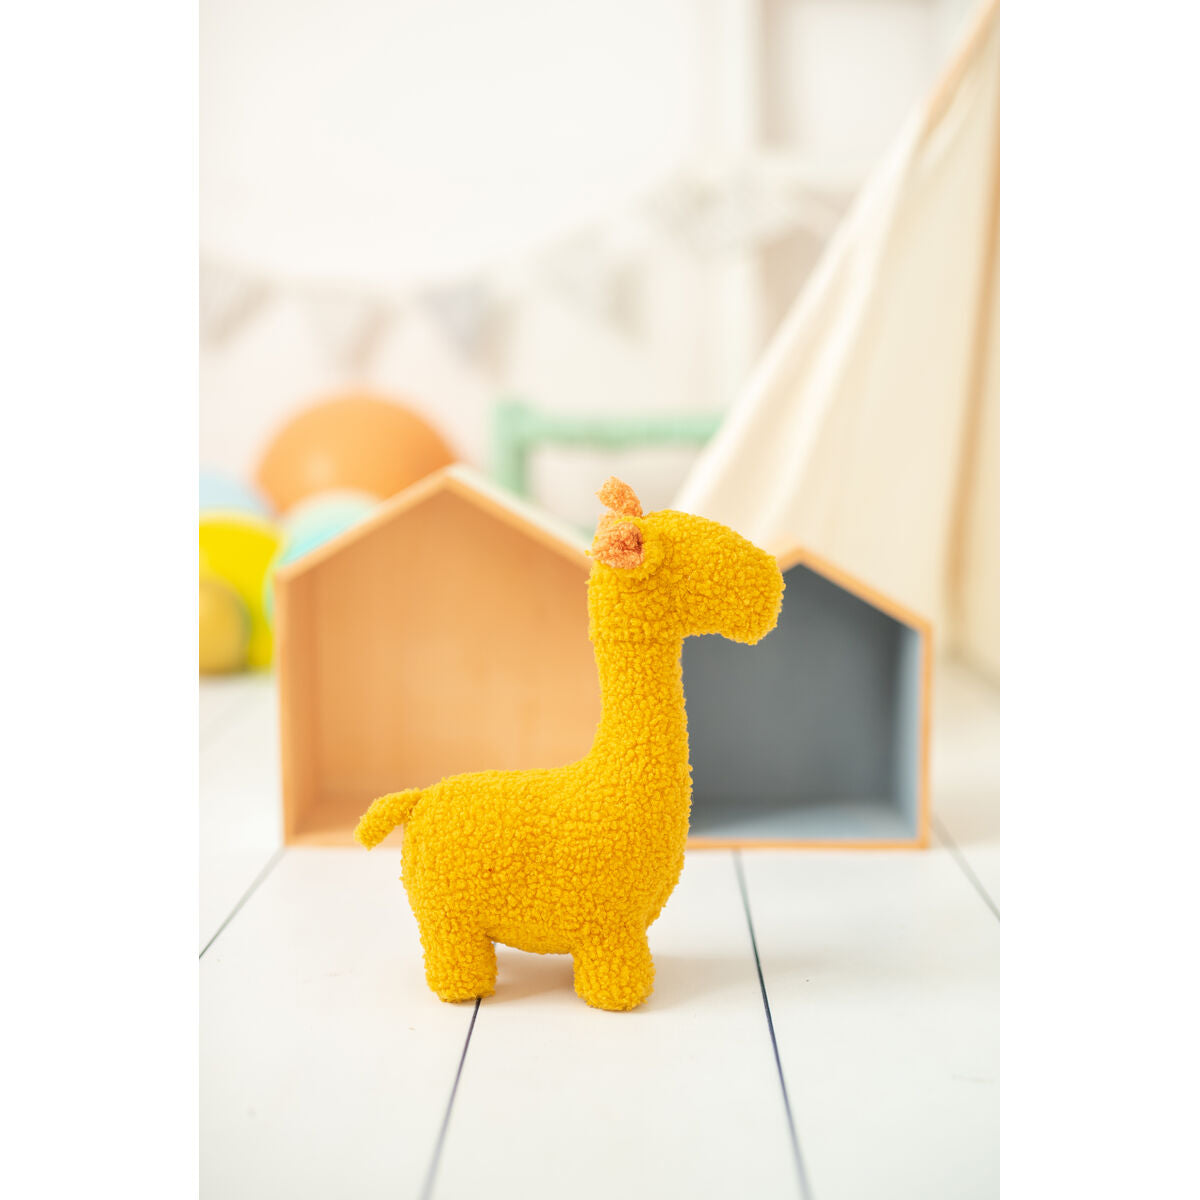 Mjukisleksak Crochetts Bebe Gul Giraff 28 x 32 x 19 cm-Leksaker och spel, Mjuka leksaker-Crochetts-peaceofhome.se